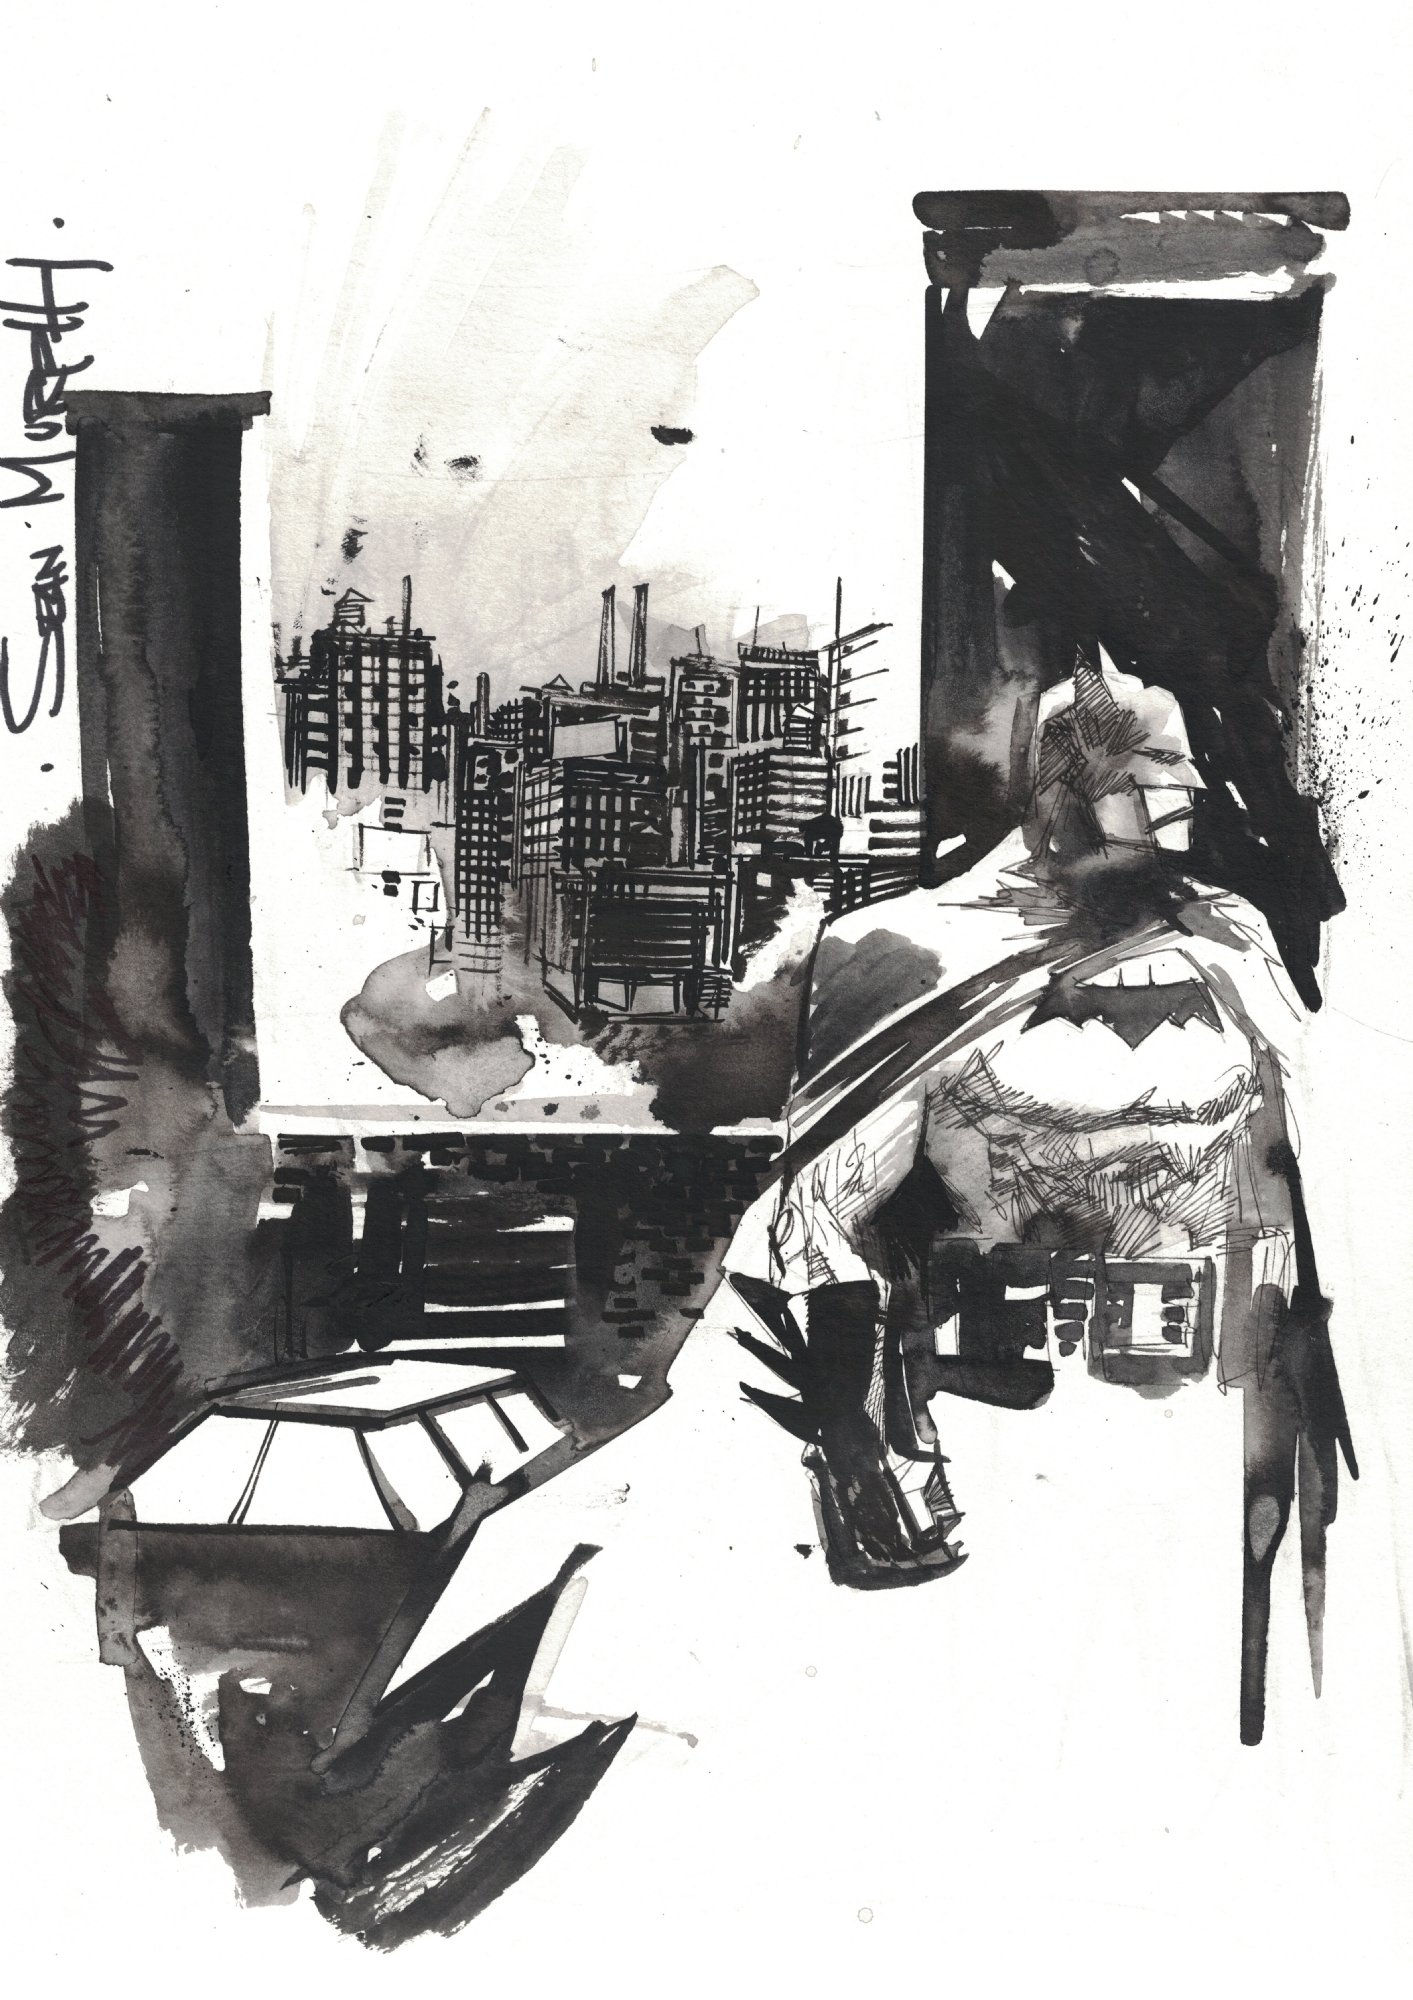 Batman by Sean Murphy